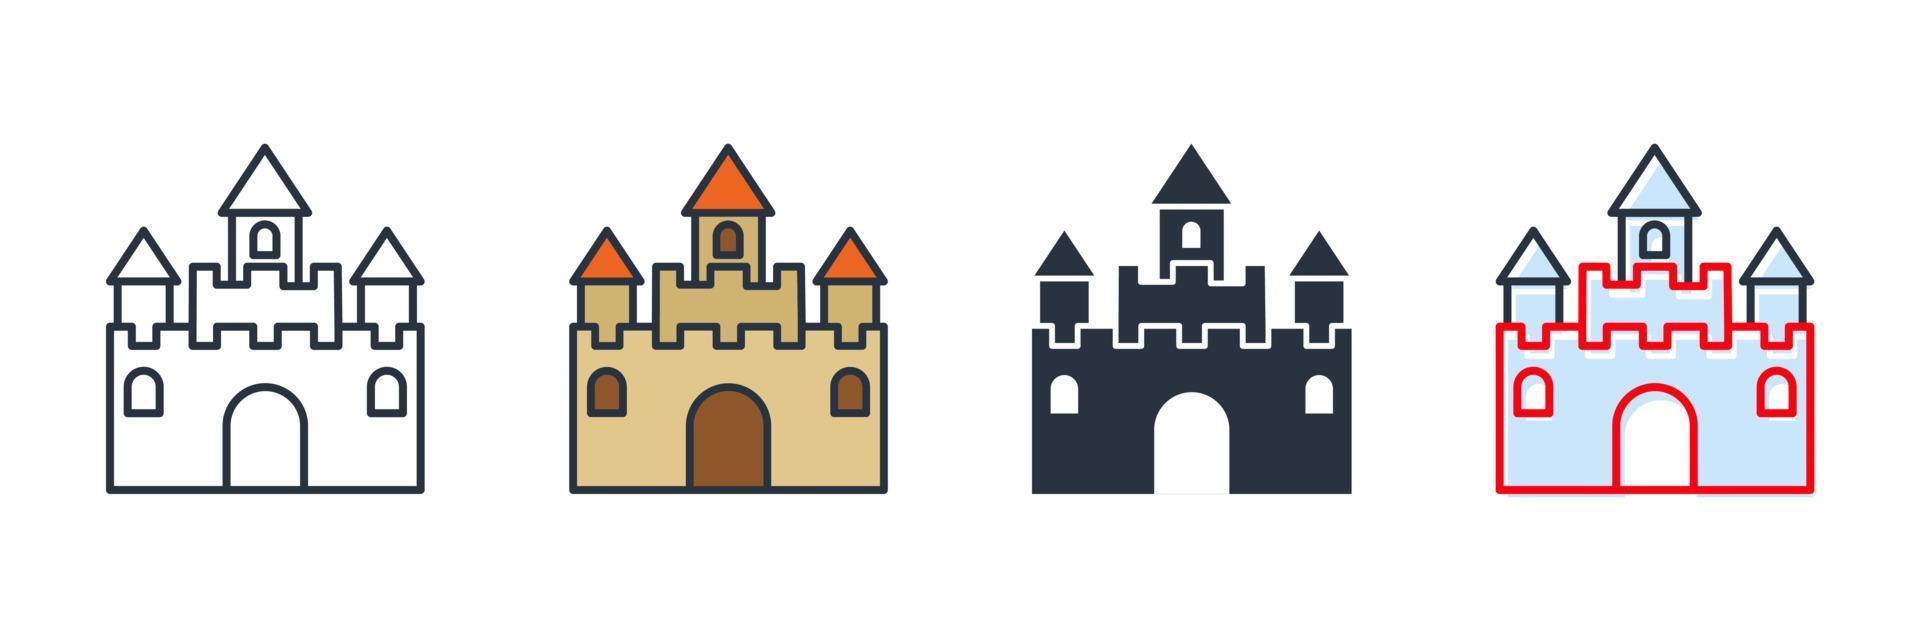 Ilustración de vector de logotipo de icono de edificio de castillo. plantilla de símbolo de castillo para la colección de diseño gráfico y web